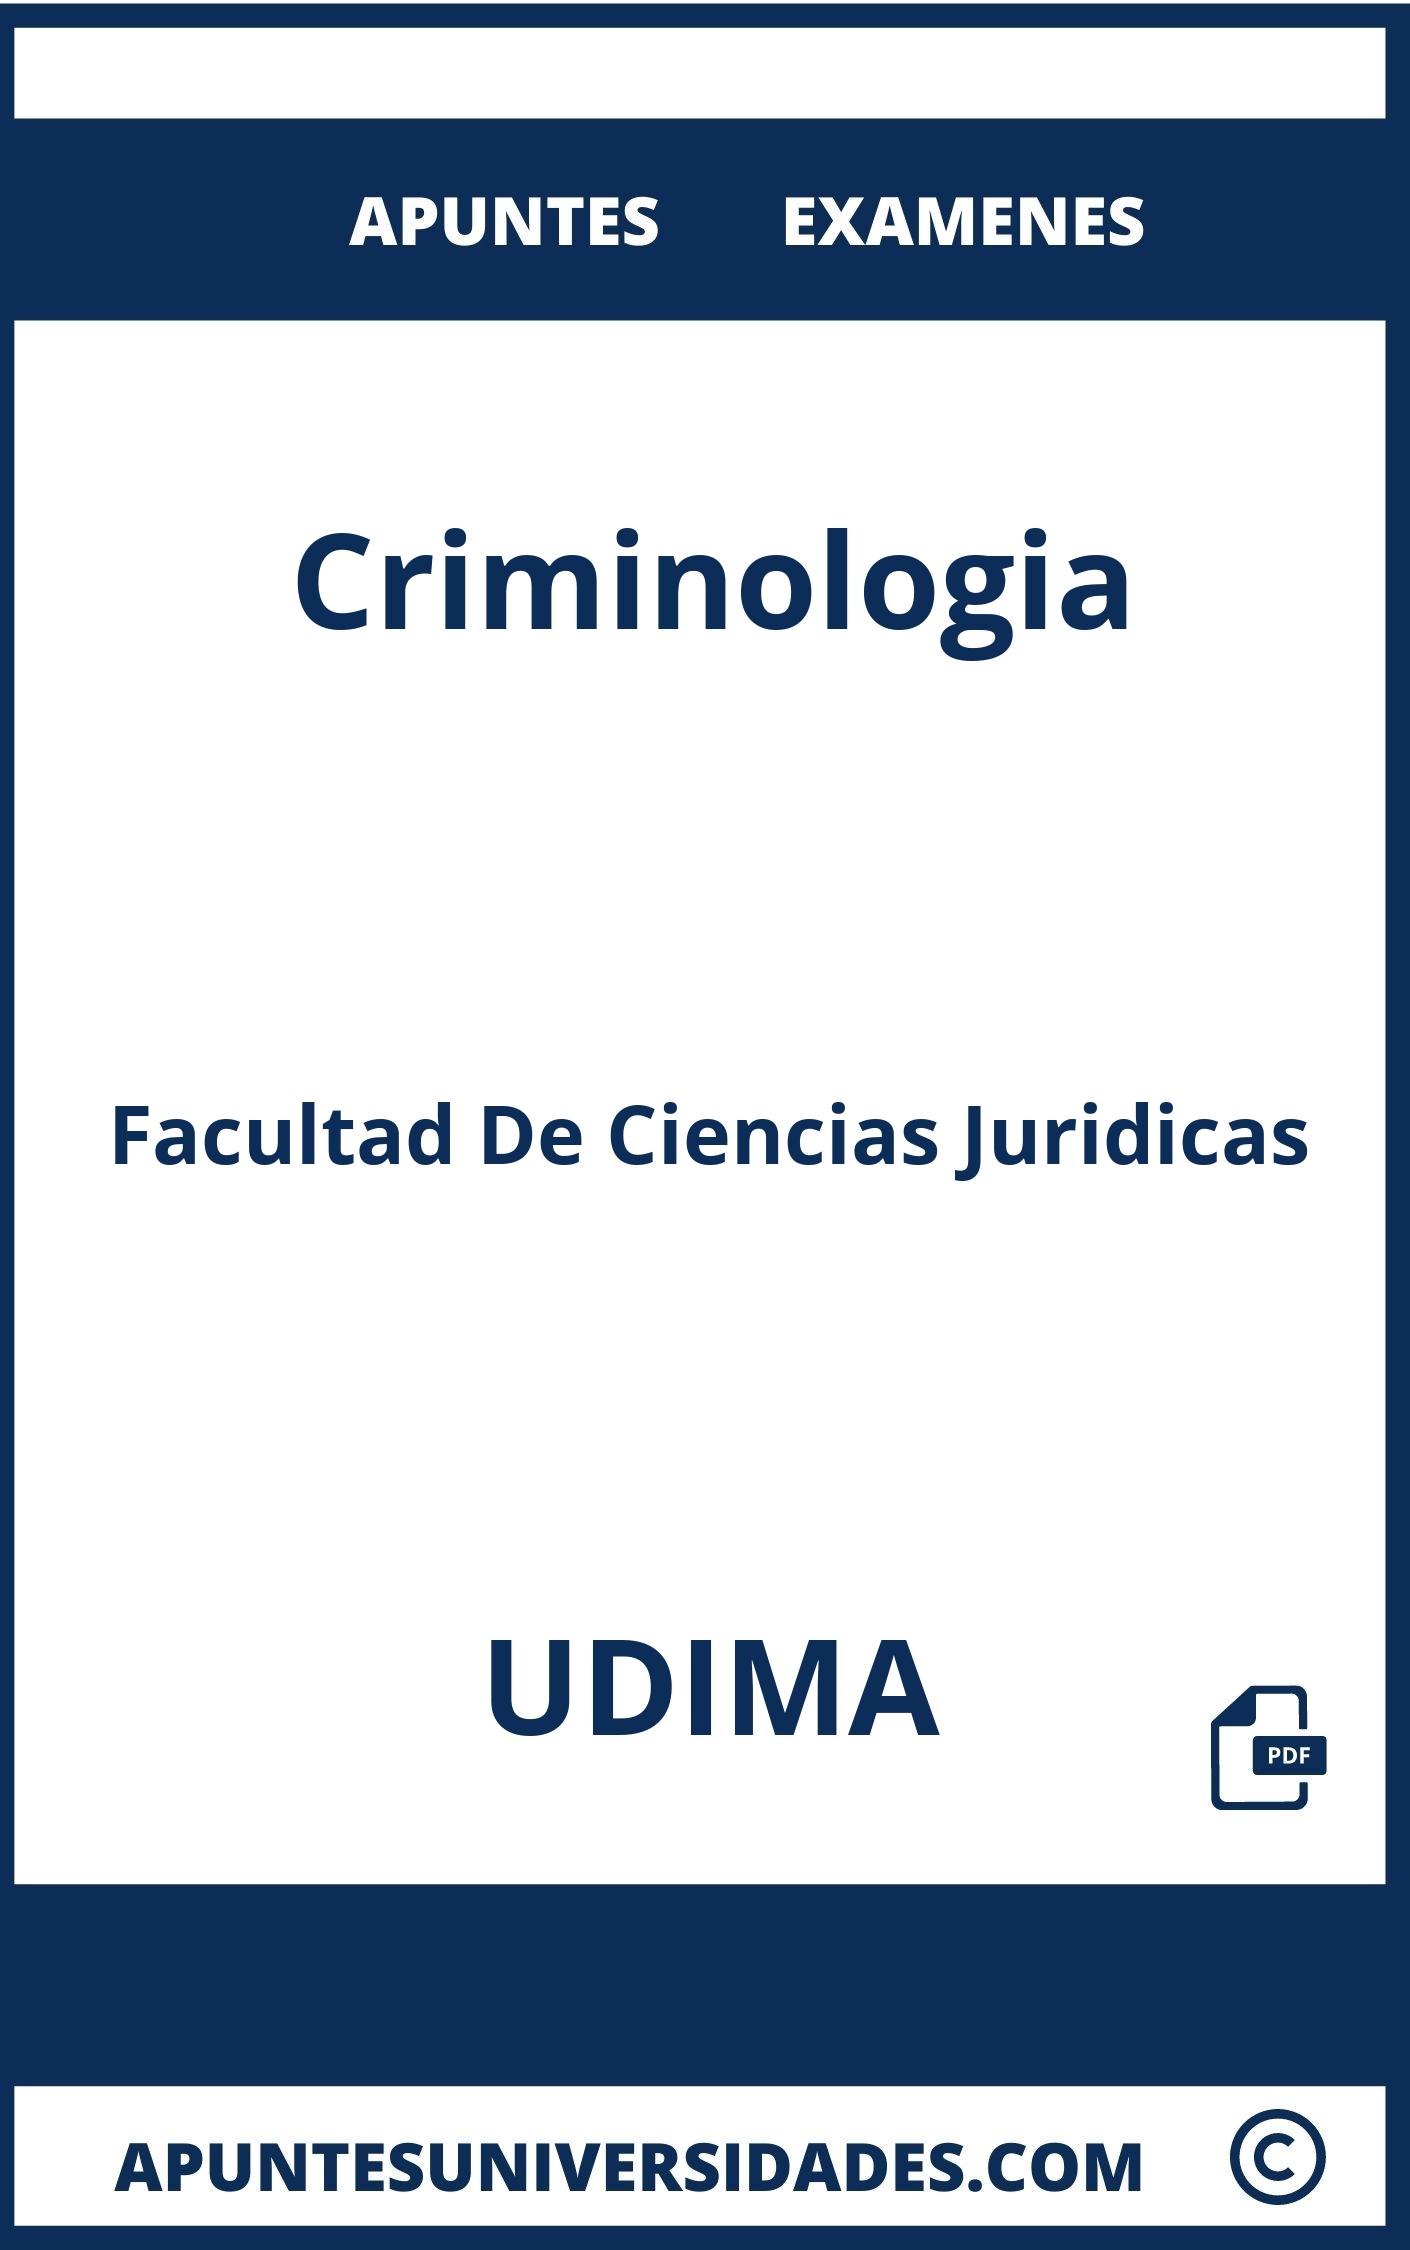 Apuntes y Examenes de Criminologia UDIMA